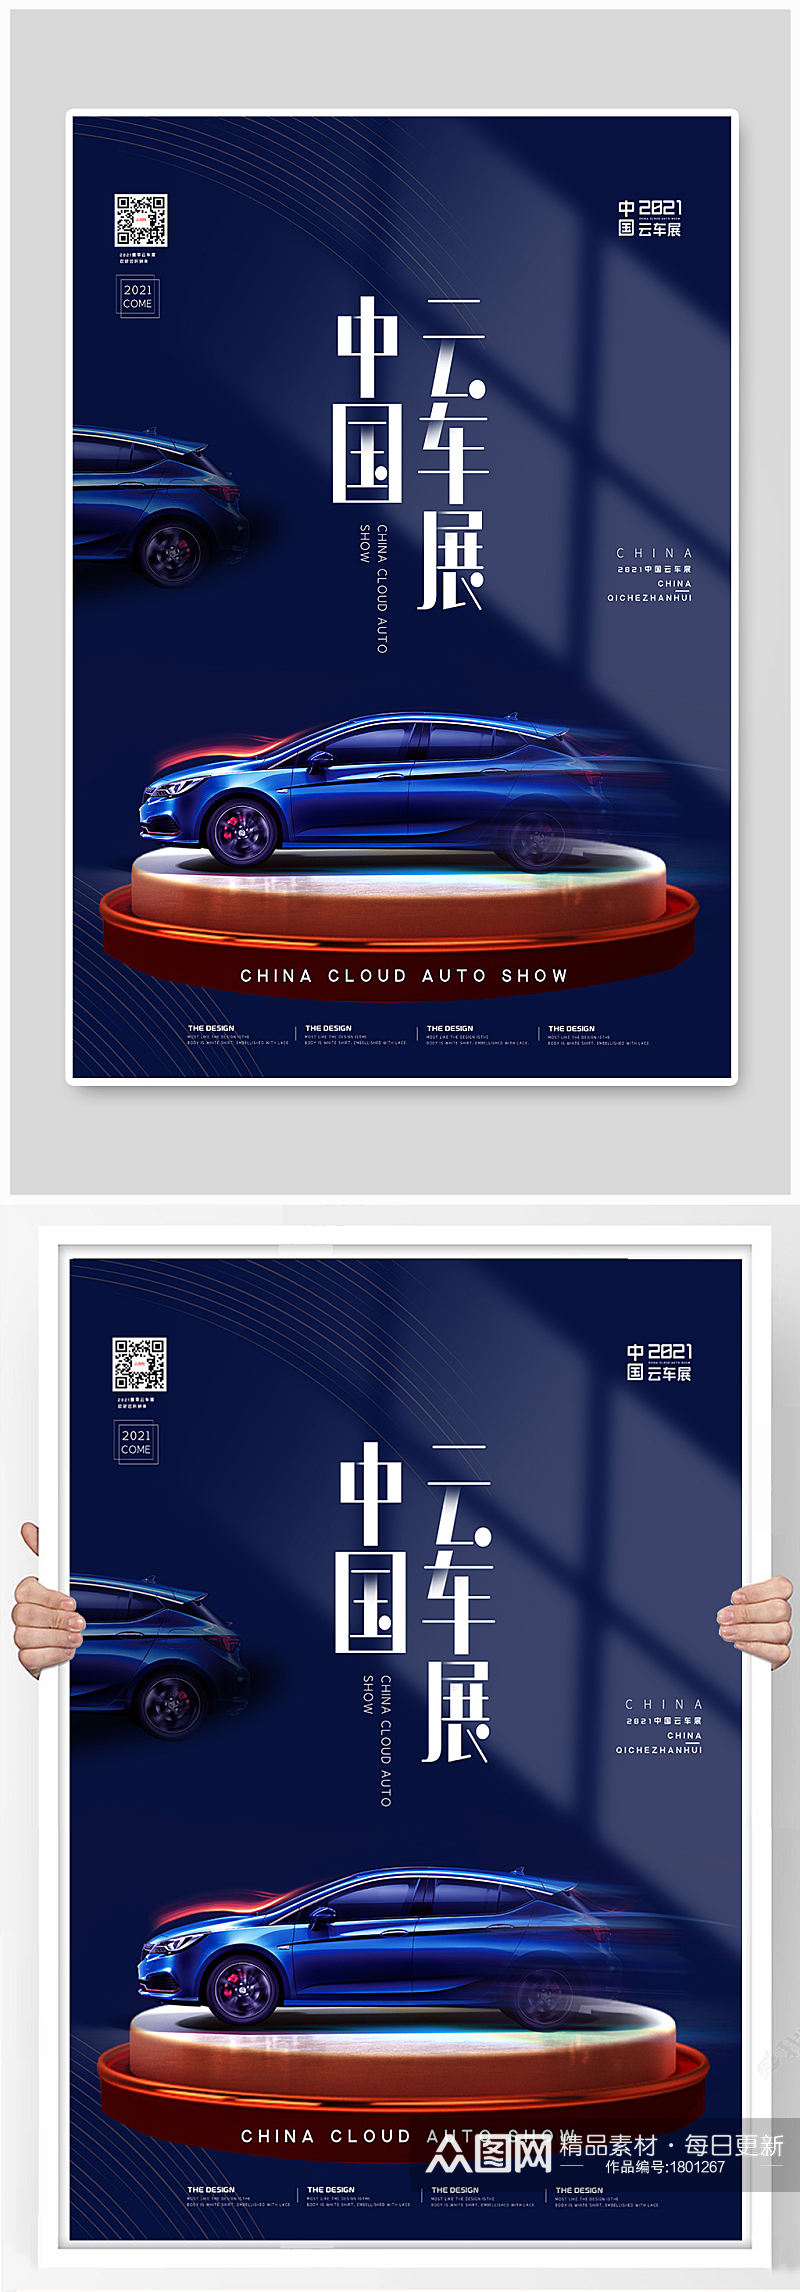 蓝色大气汽车展会海报设计素材